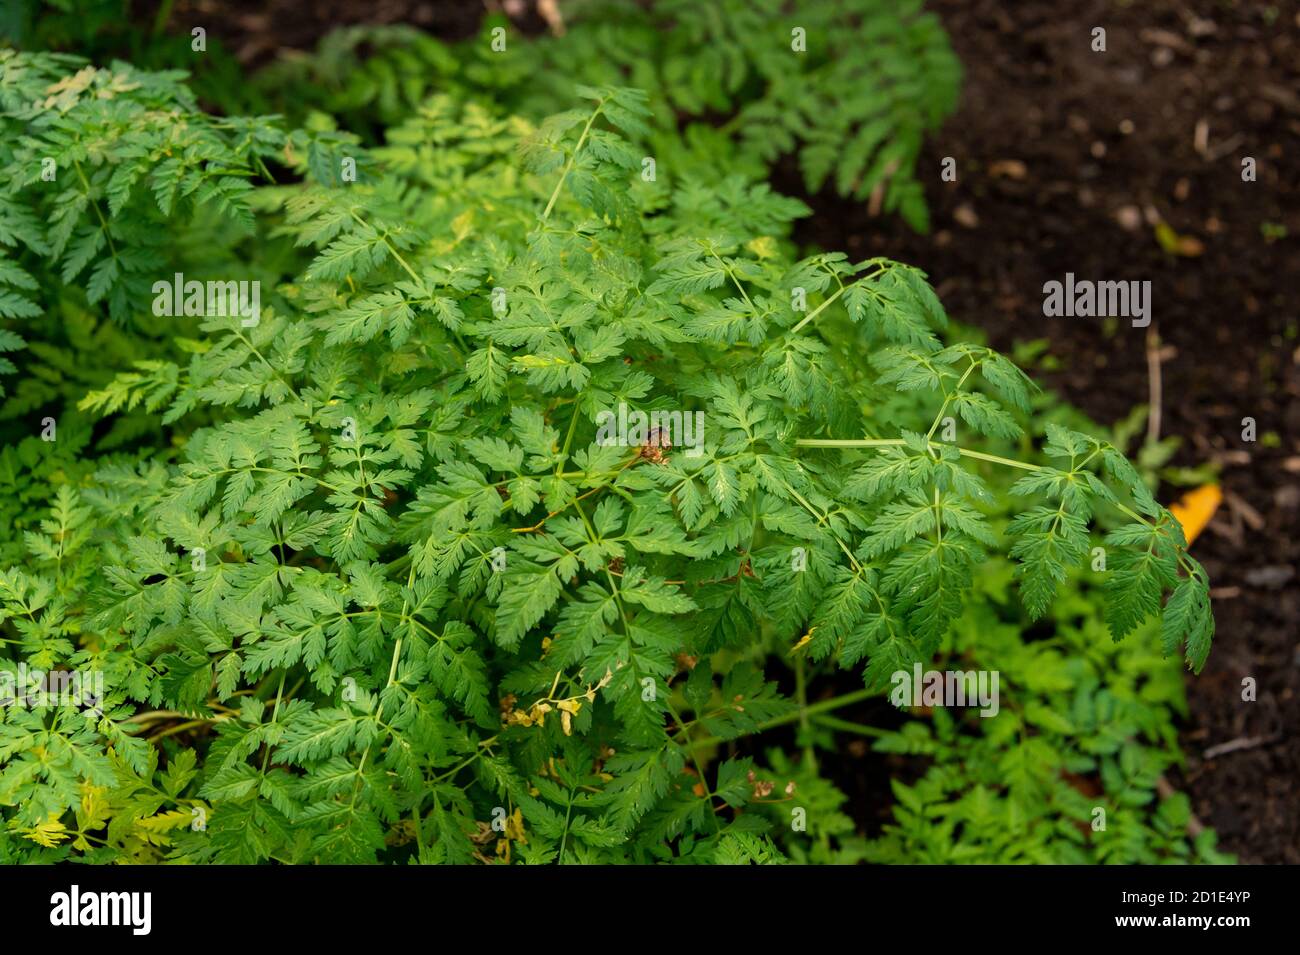 Poison hemlock leaves (Conium maculatum) Stock Photo